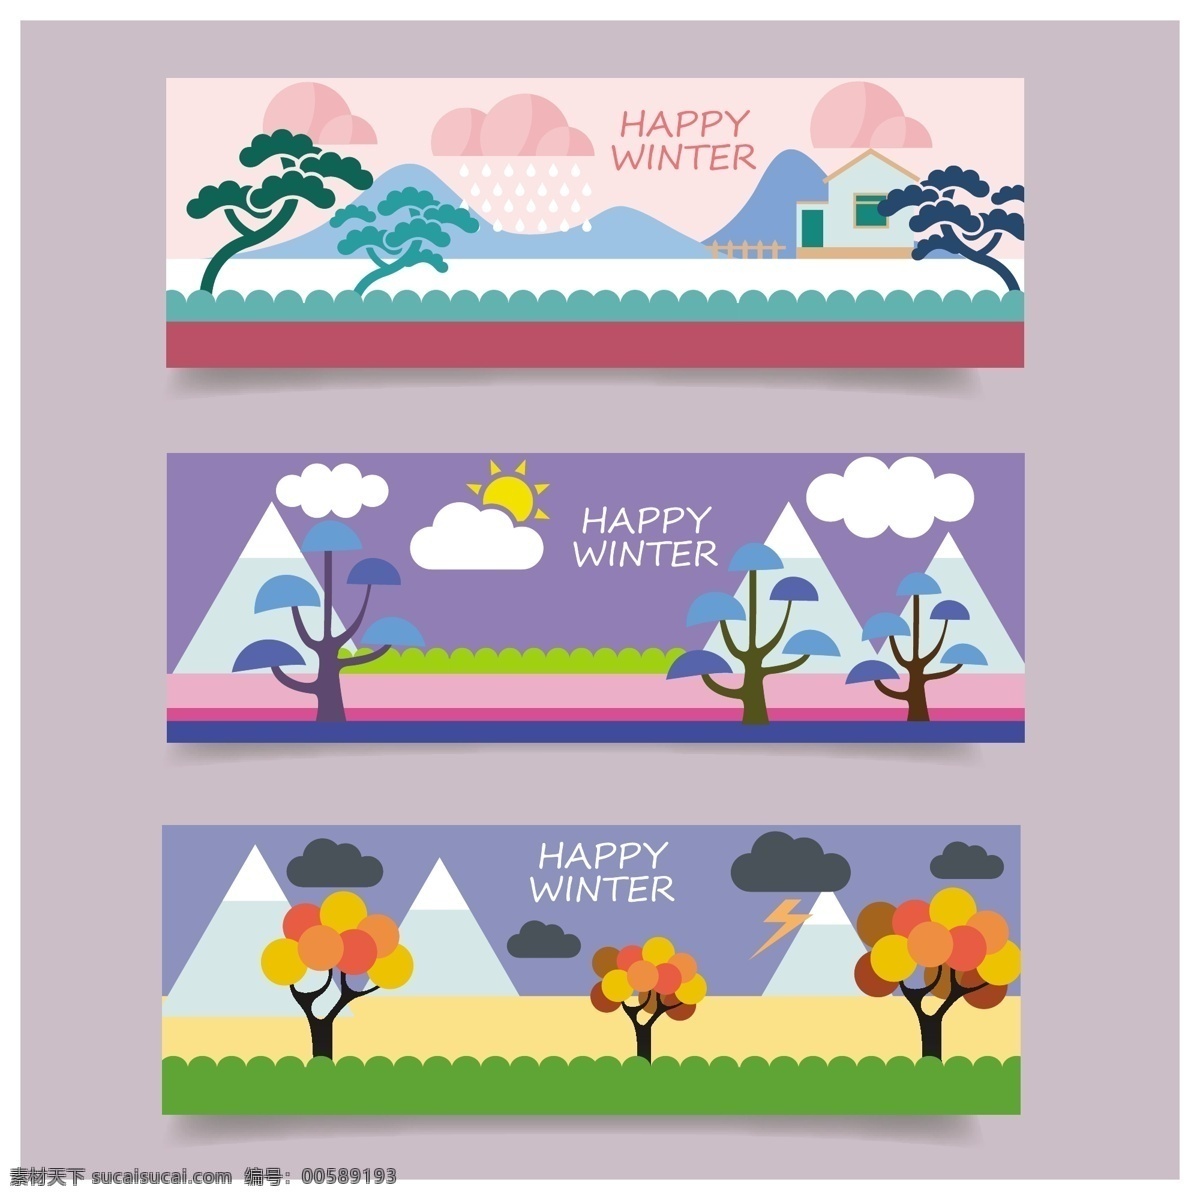 冬天 卡片 卡通 背景 自由 向量 冬天场景 冬天图画 卡通设计 冷 冬季风景